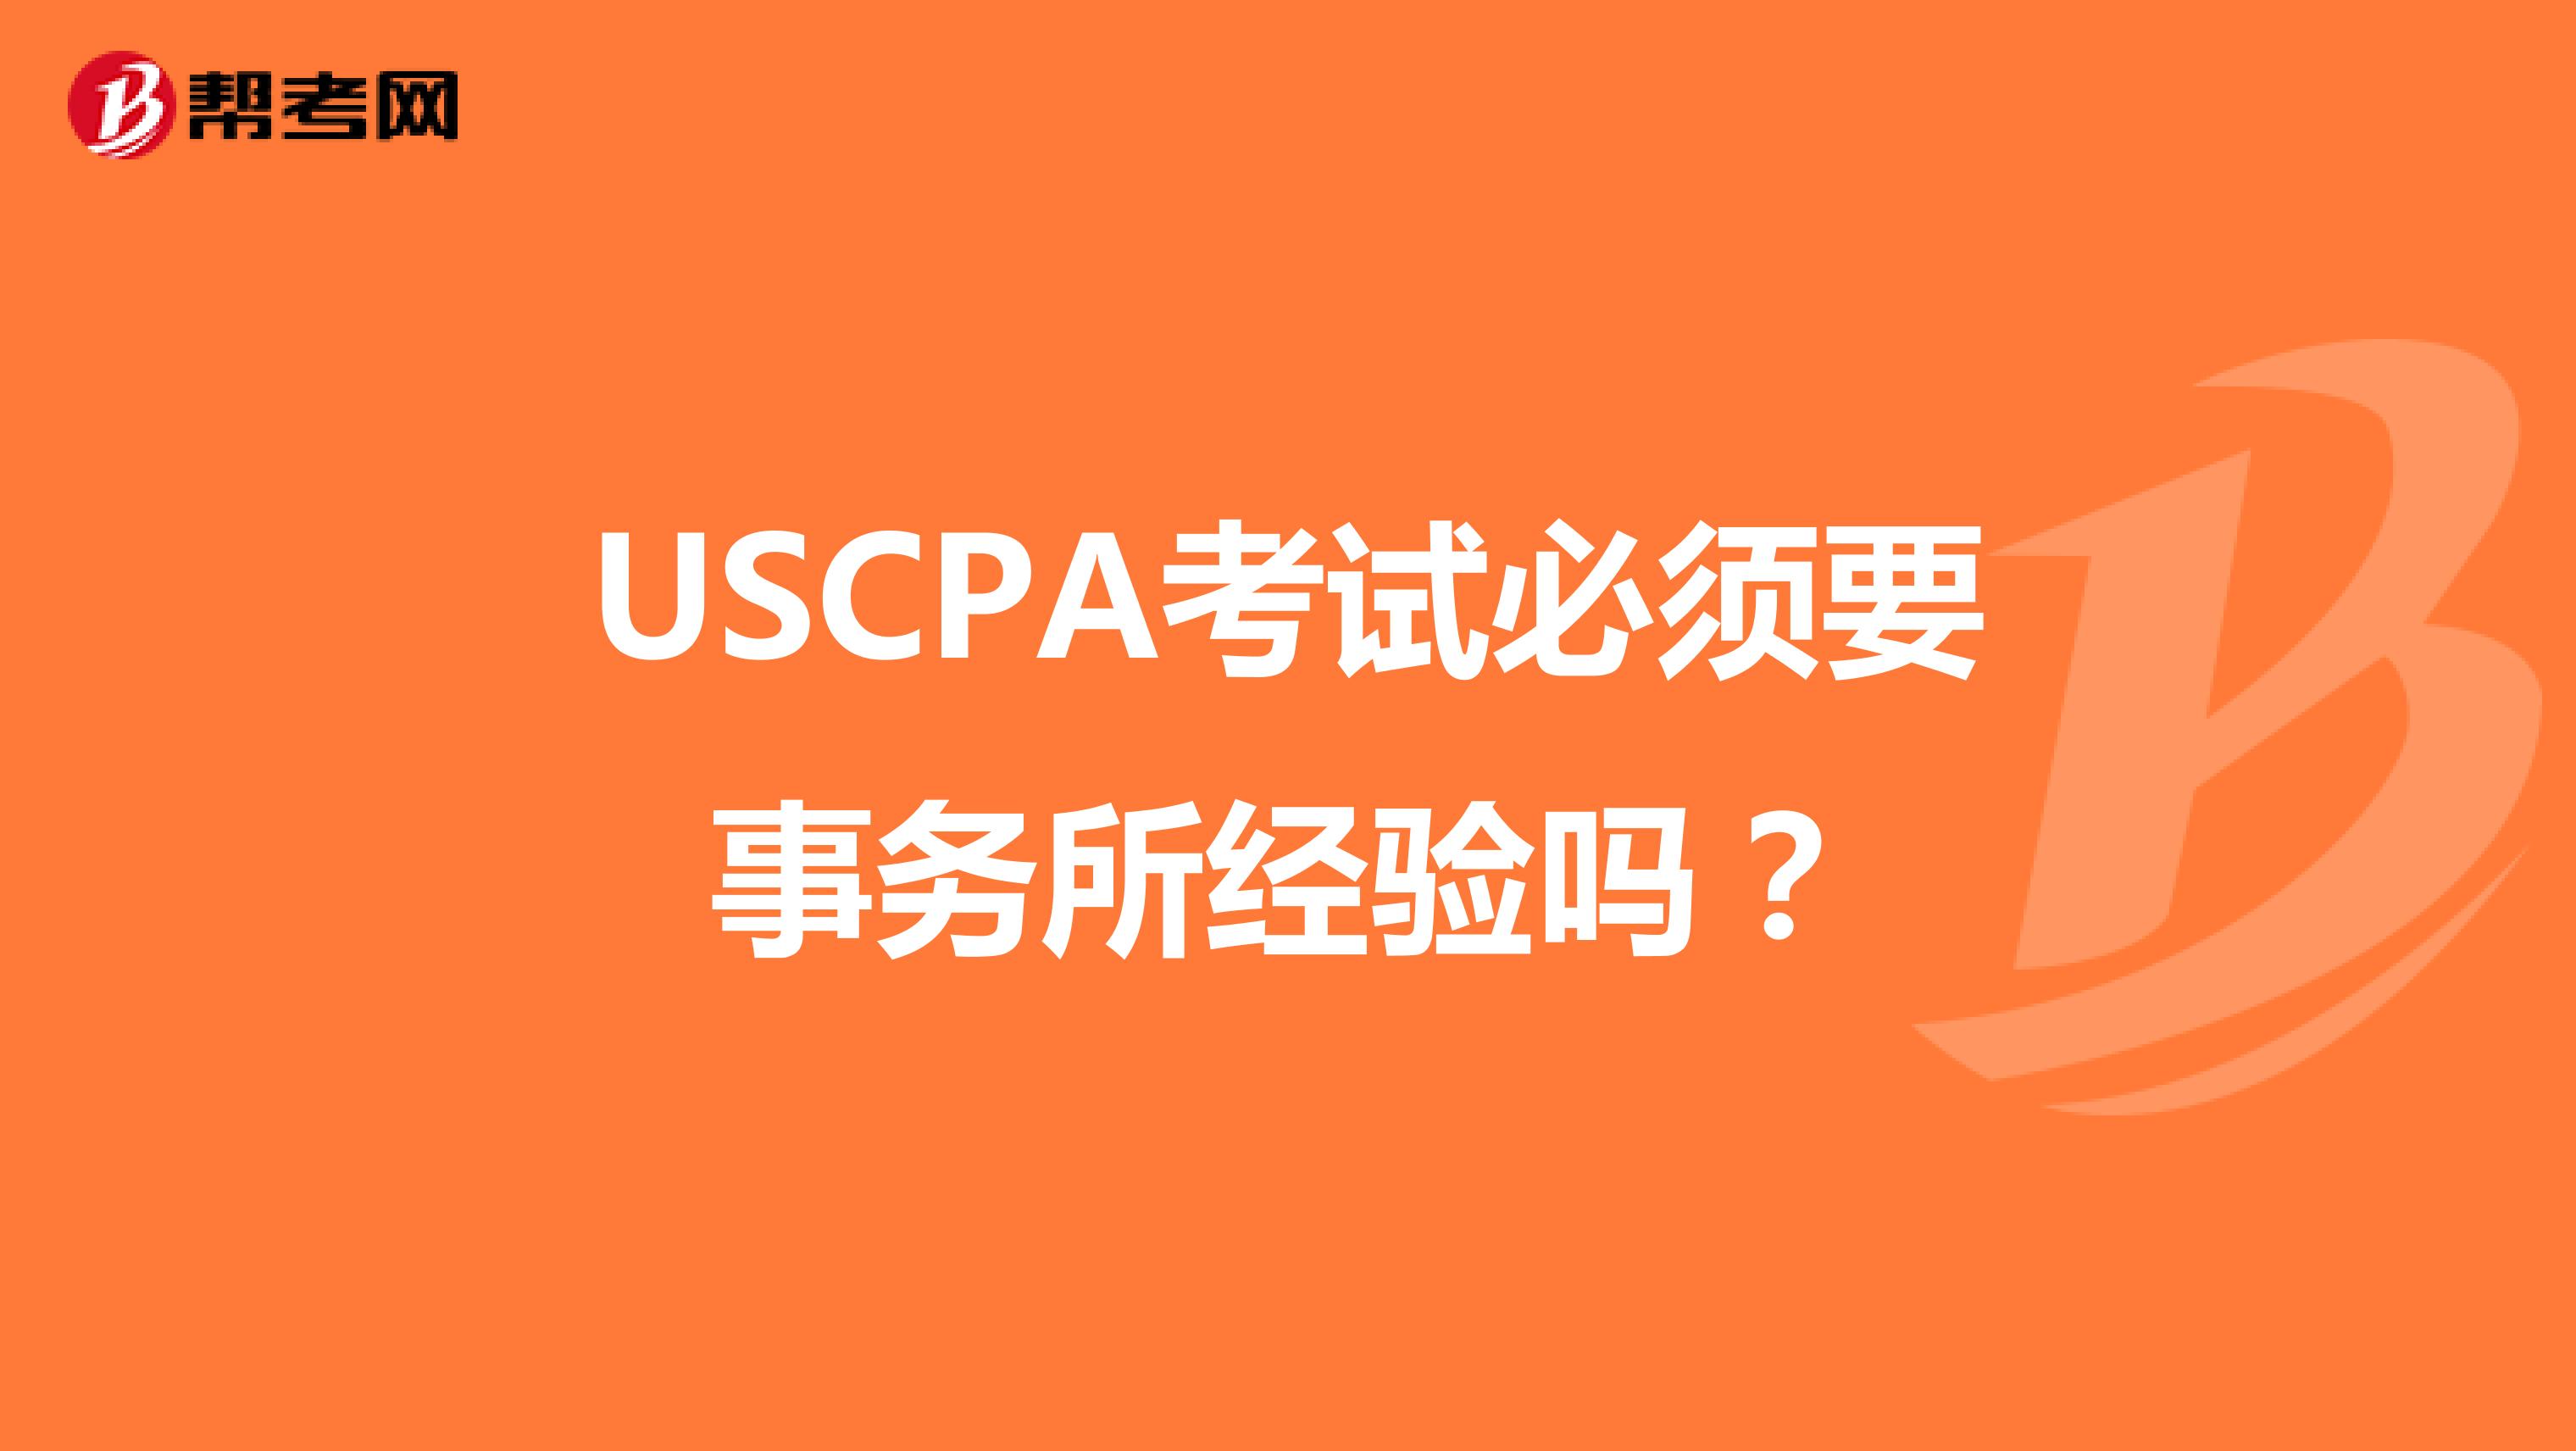 USCPA考试必须要事务所经验吗？